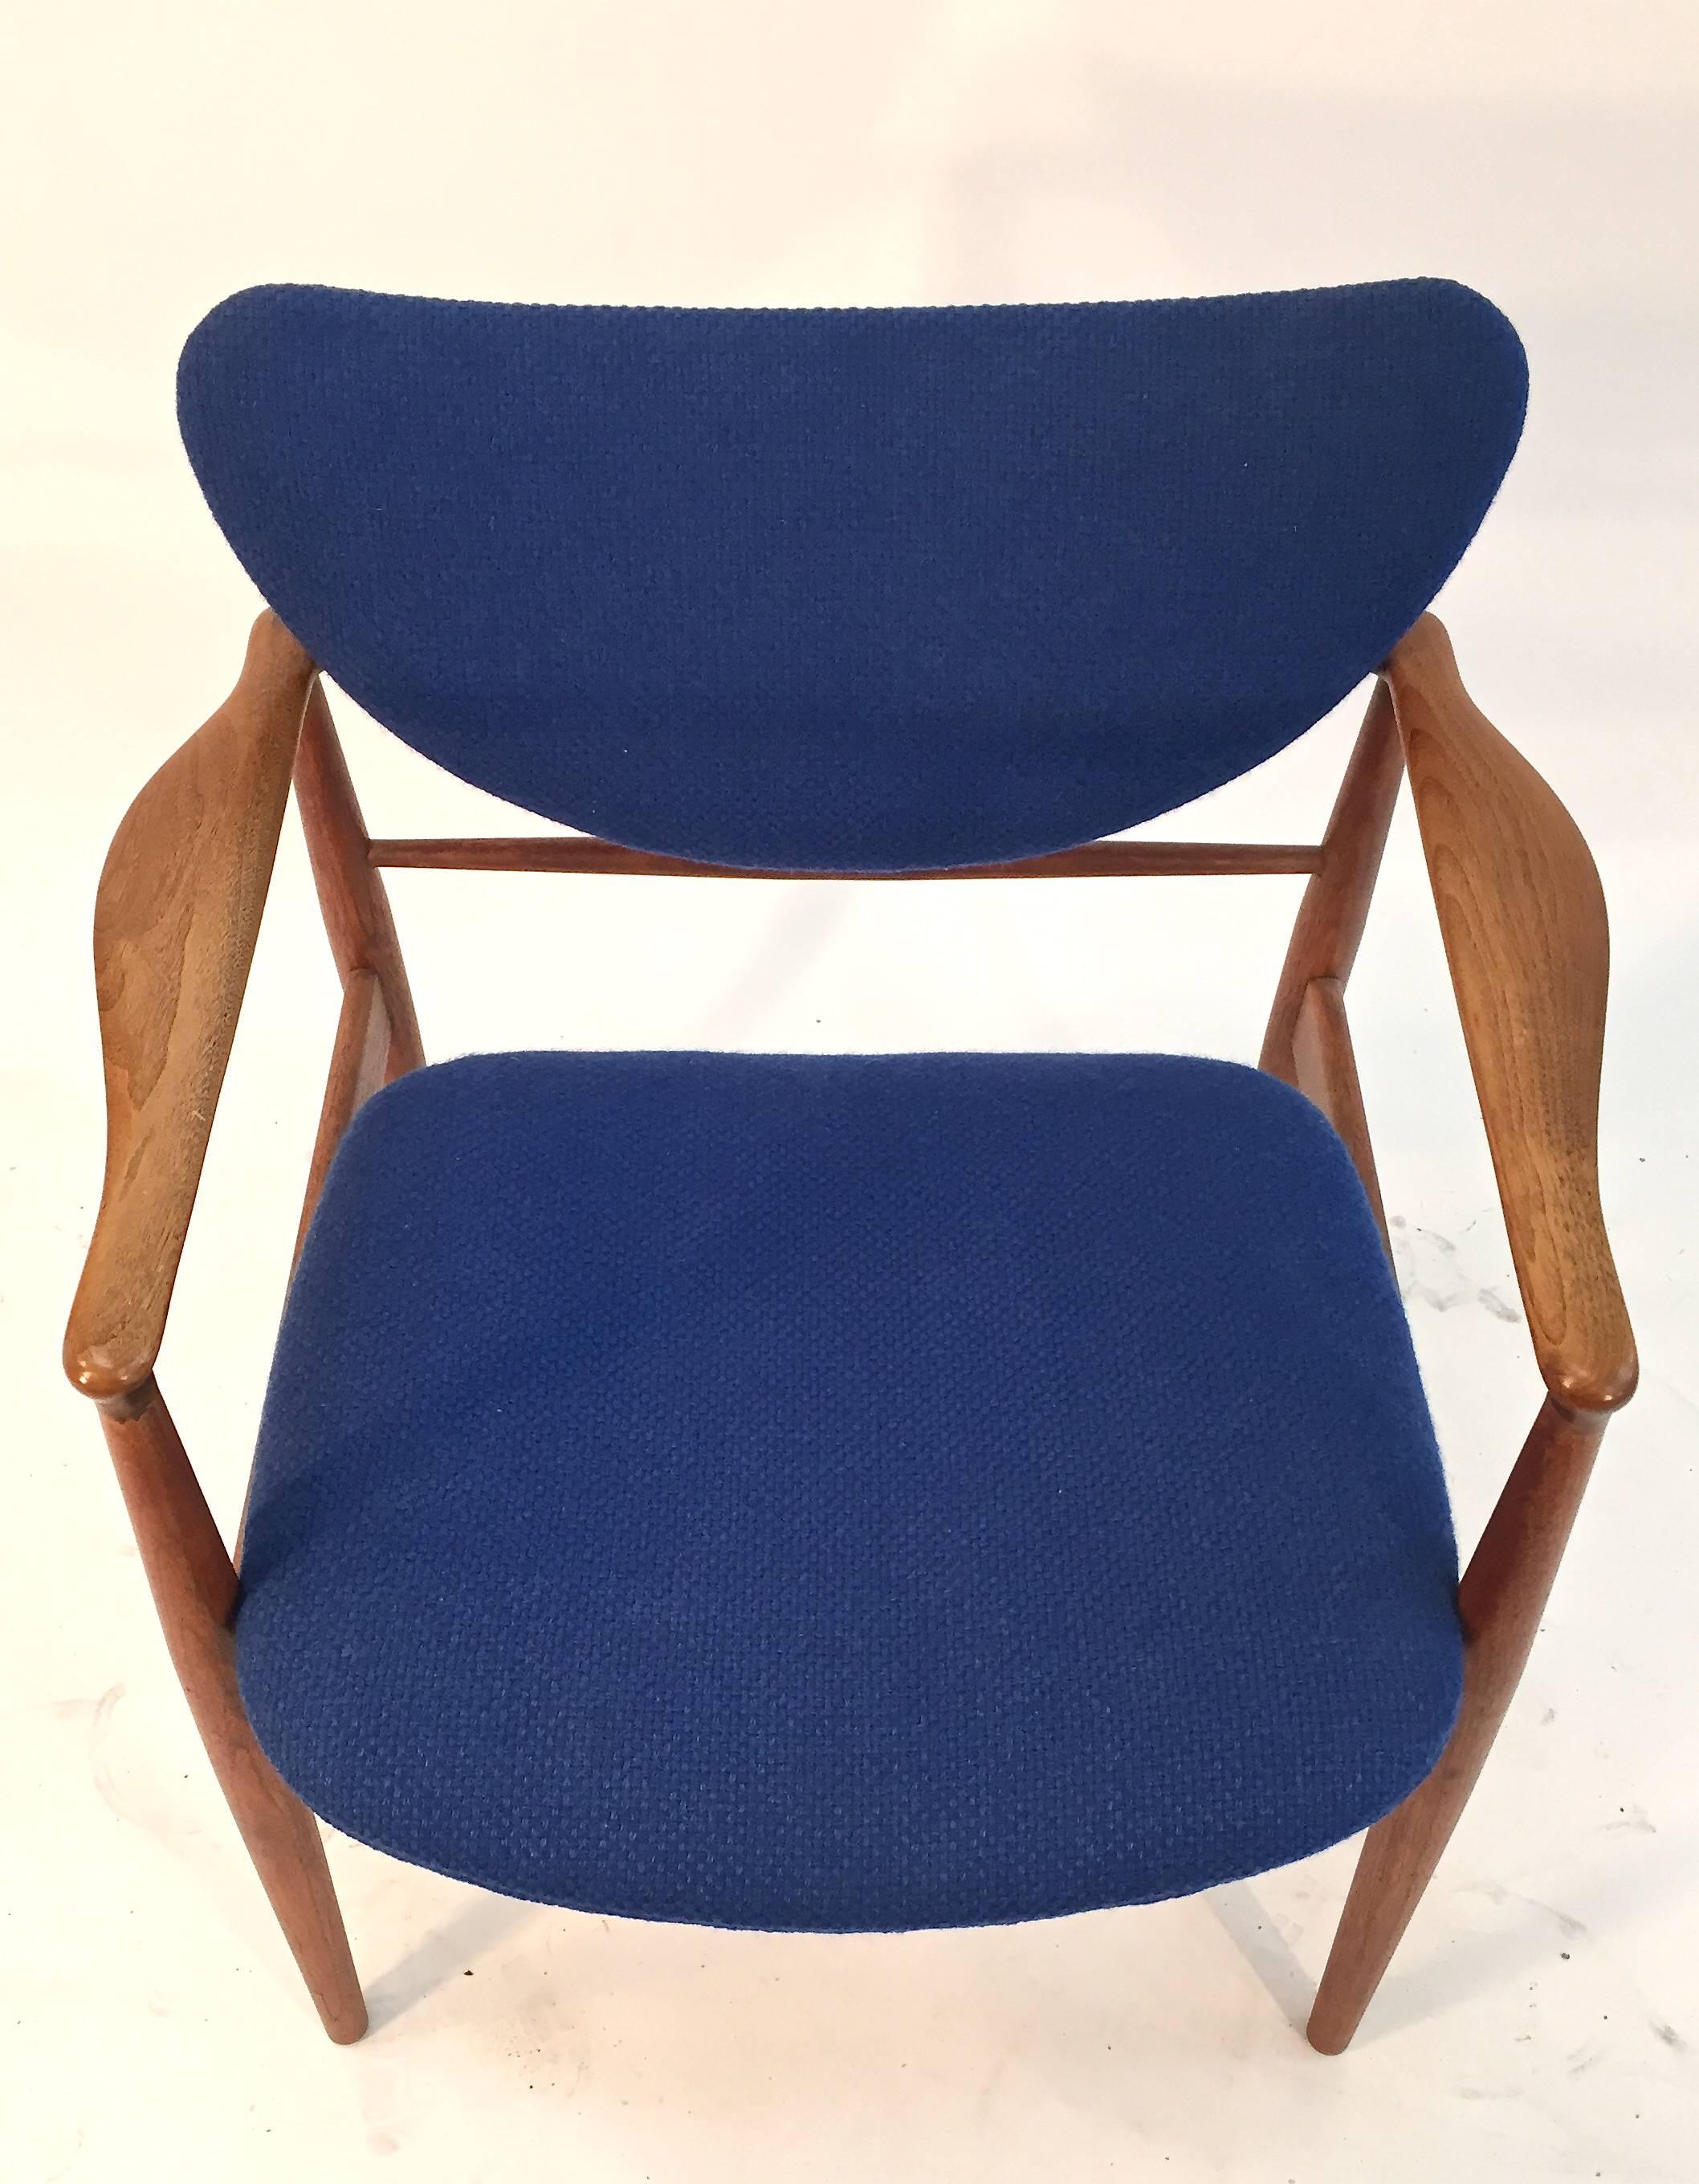 Finn Juhl model 48 walnut open armchair for Baker, 1960s.